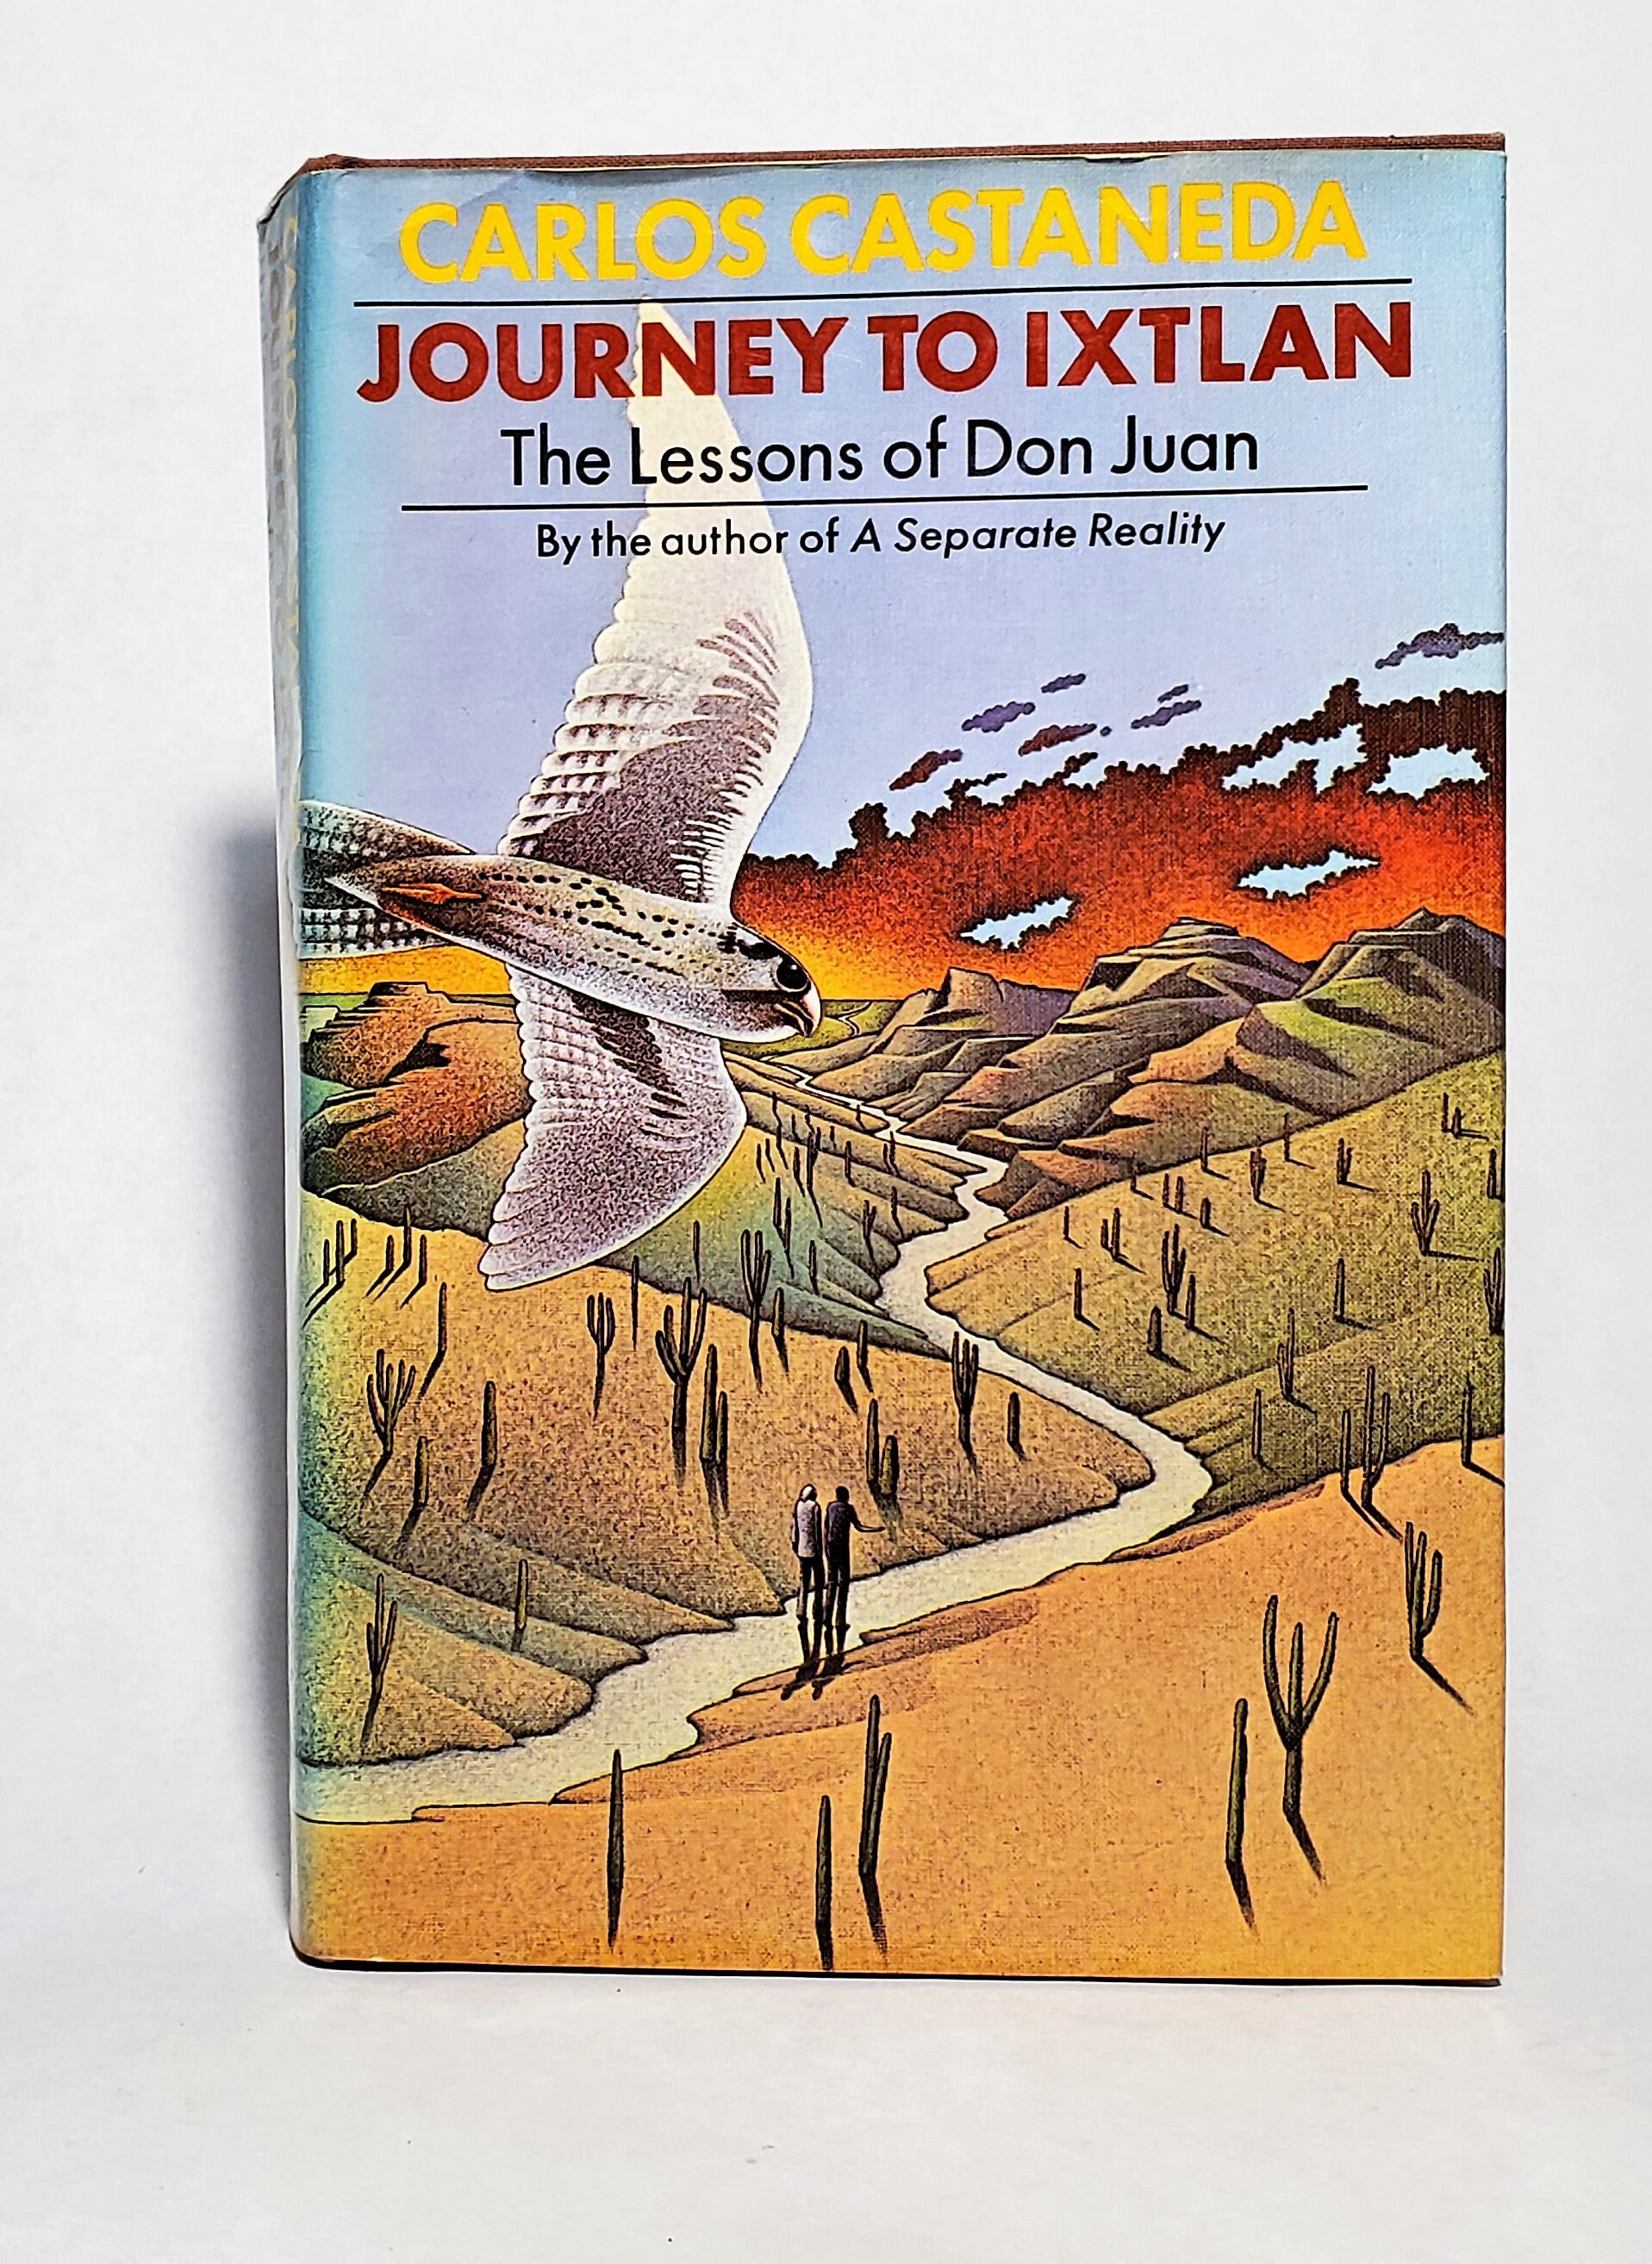 castaneda journey to ixtlan